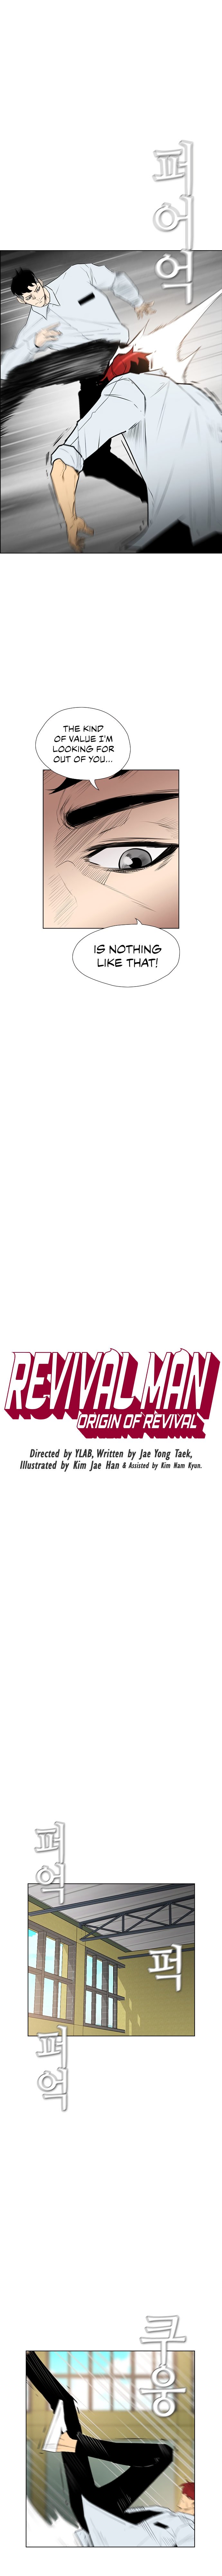 revival-man-chap-149-1